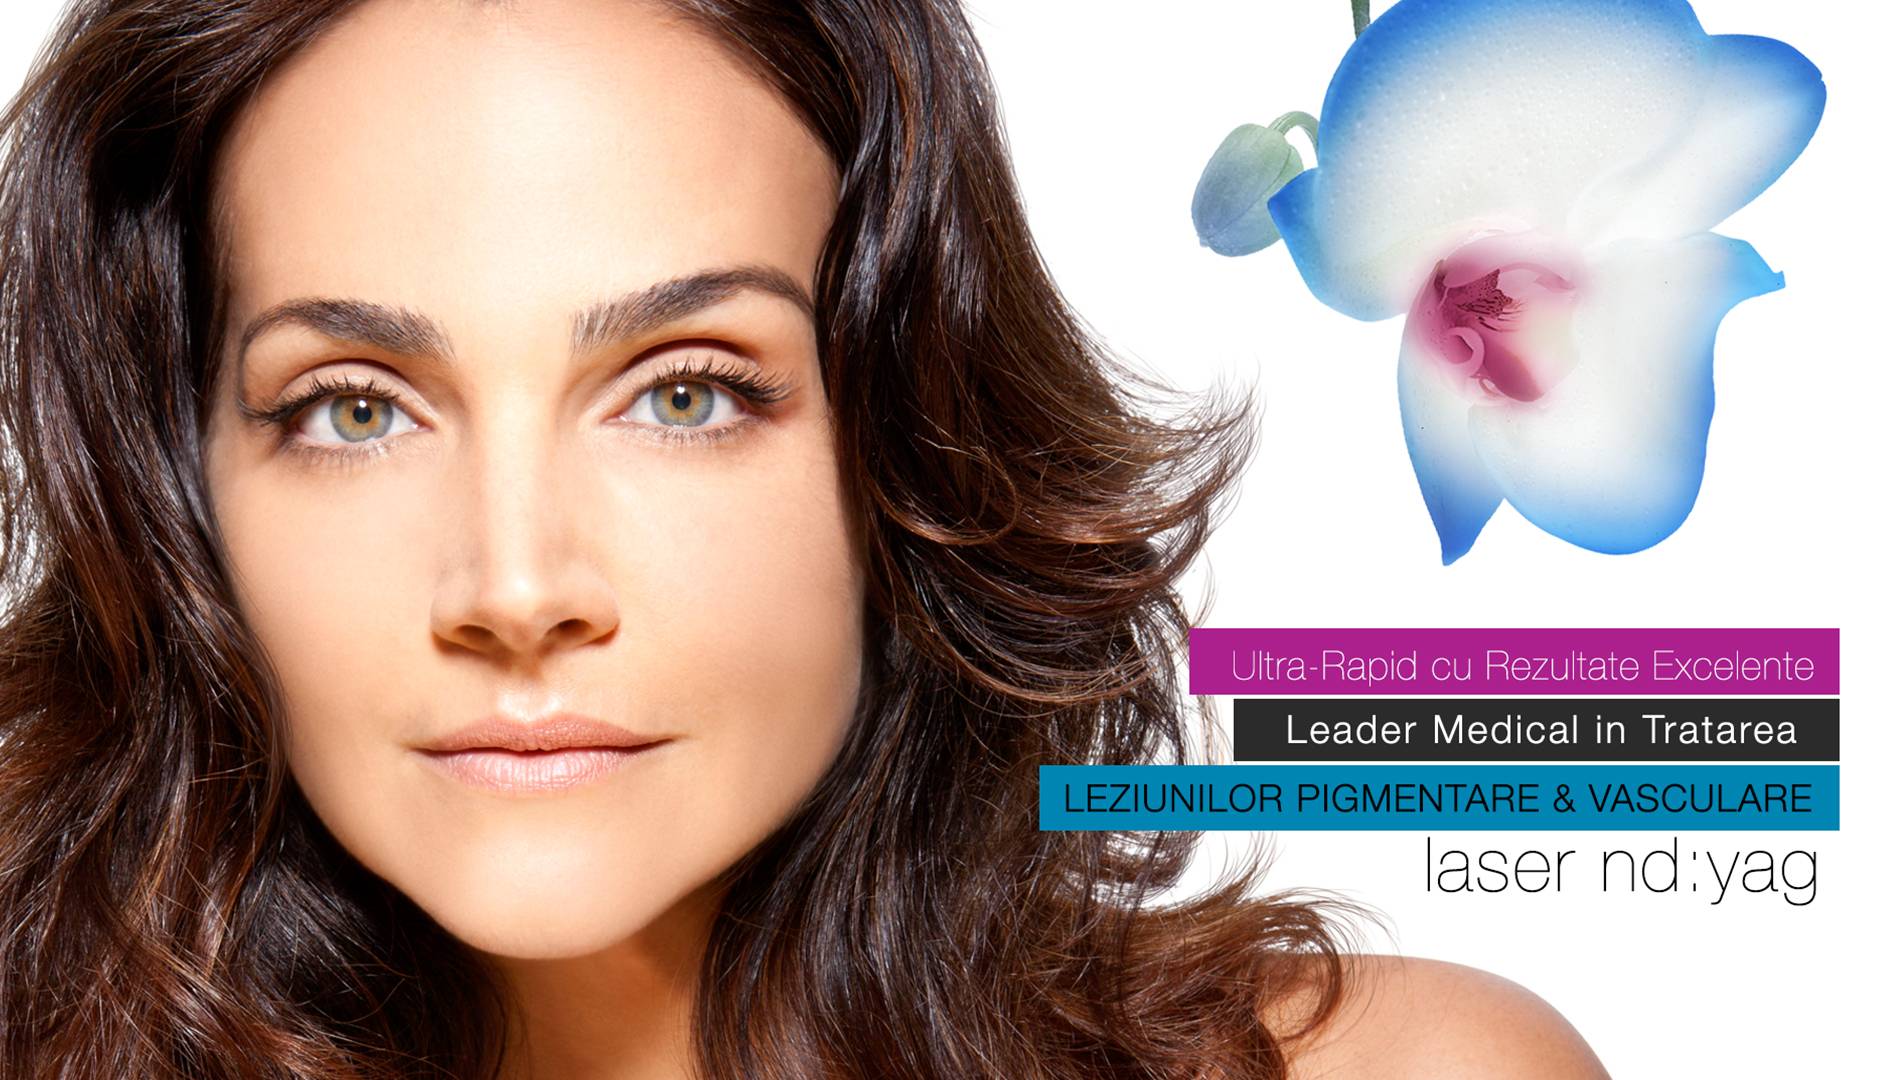 laser nd:yag pentru tratament leziuni vasculare si leziuni pigmentare